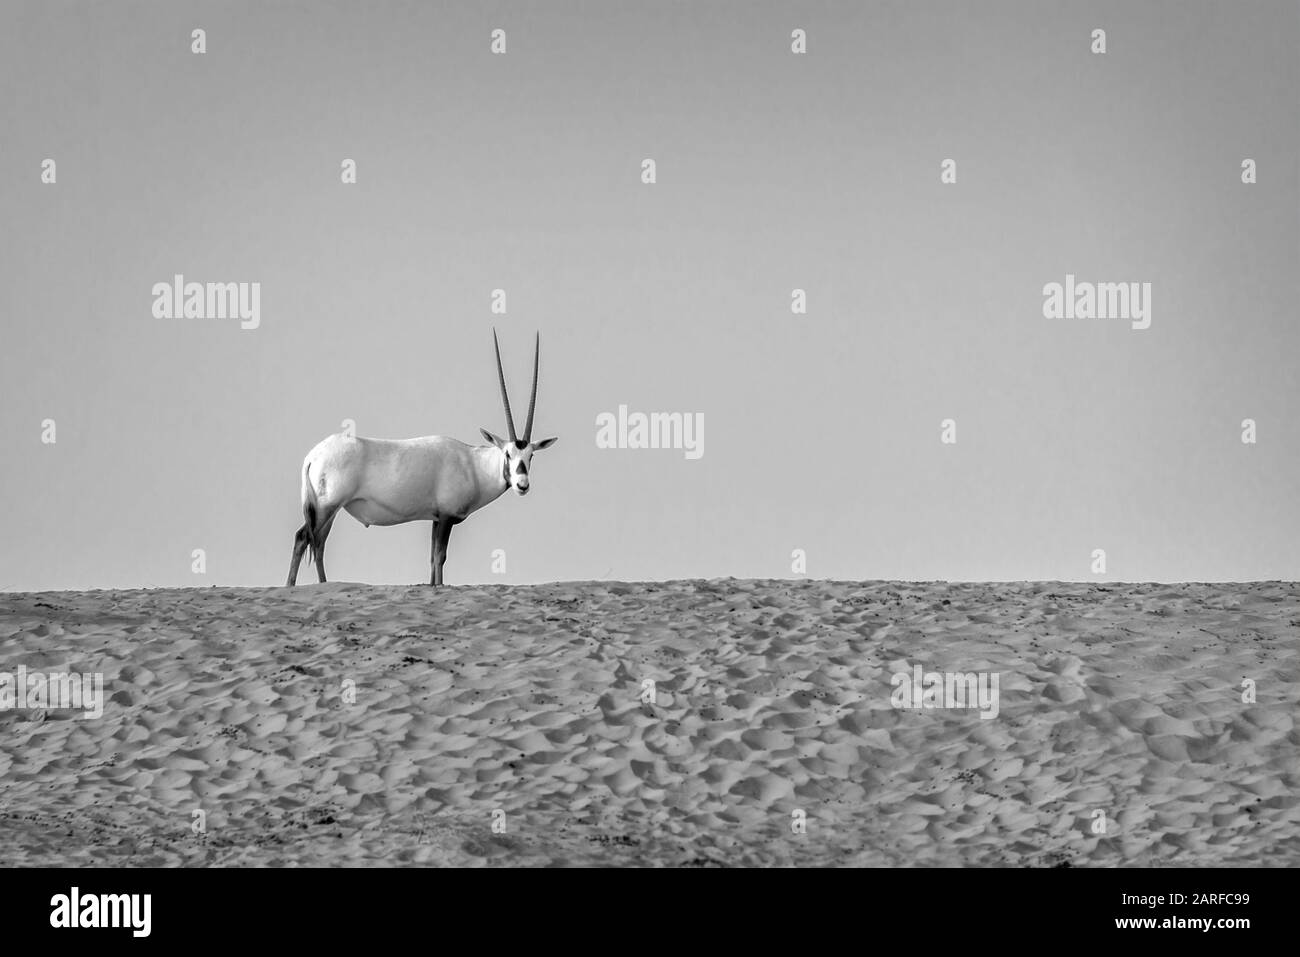 Arabische Oryx, Weiße Oryx (Oryx leucoryx) in der Wüste in der Nähe von Dubai, Vereinigte Arabische Emirate Stockfoto